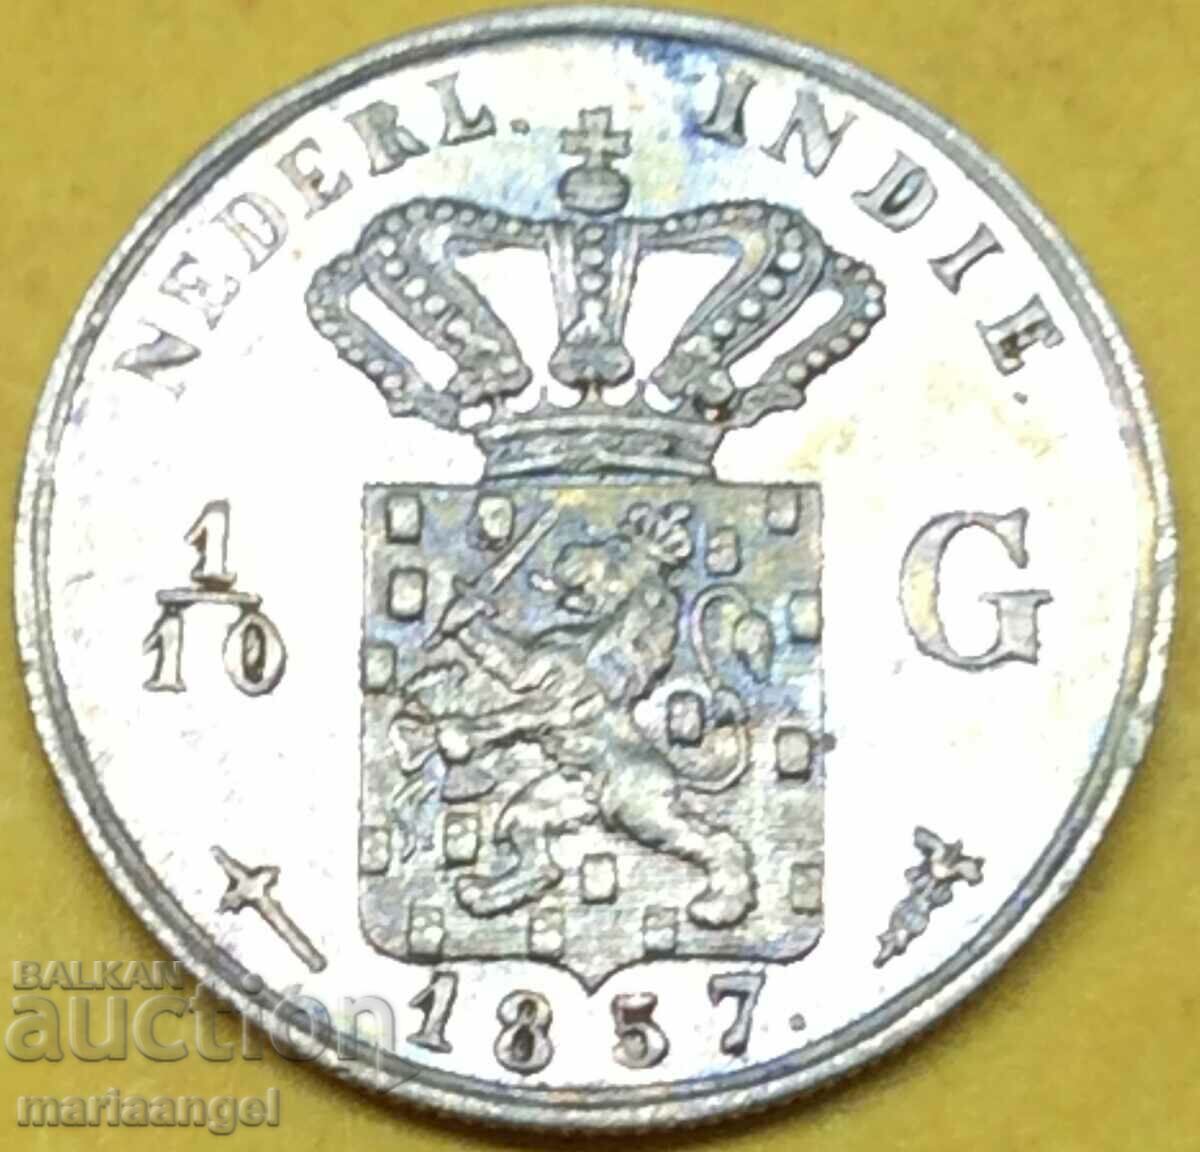 1/10 Gulden 1857 Netherlands Silver